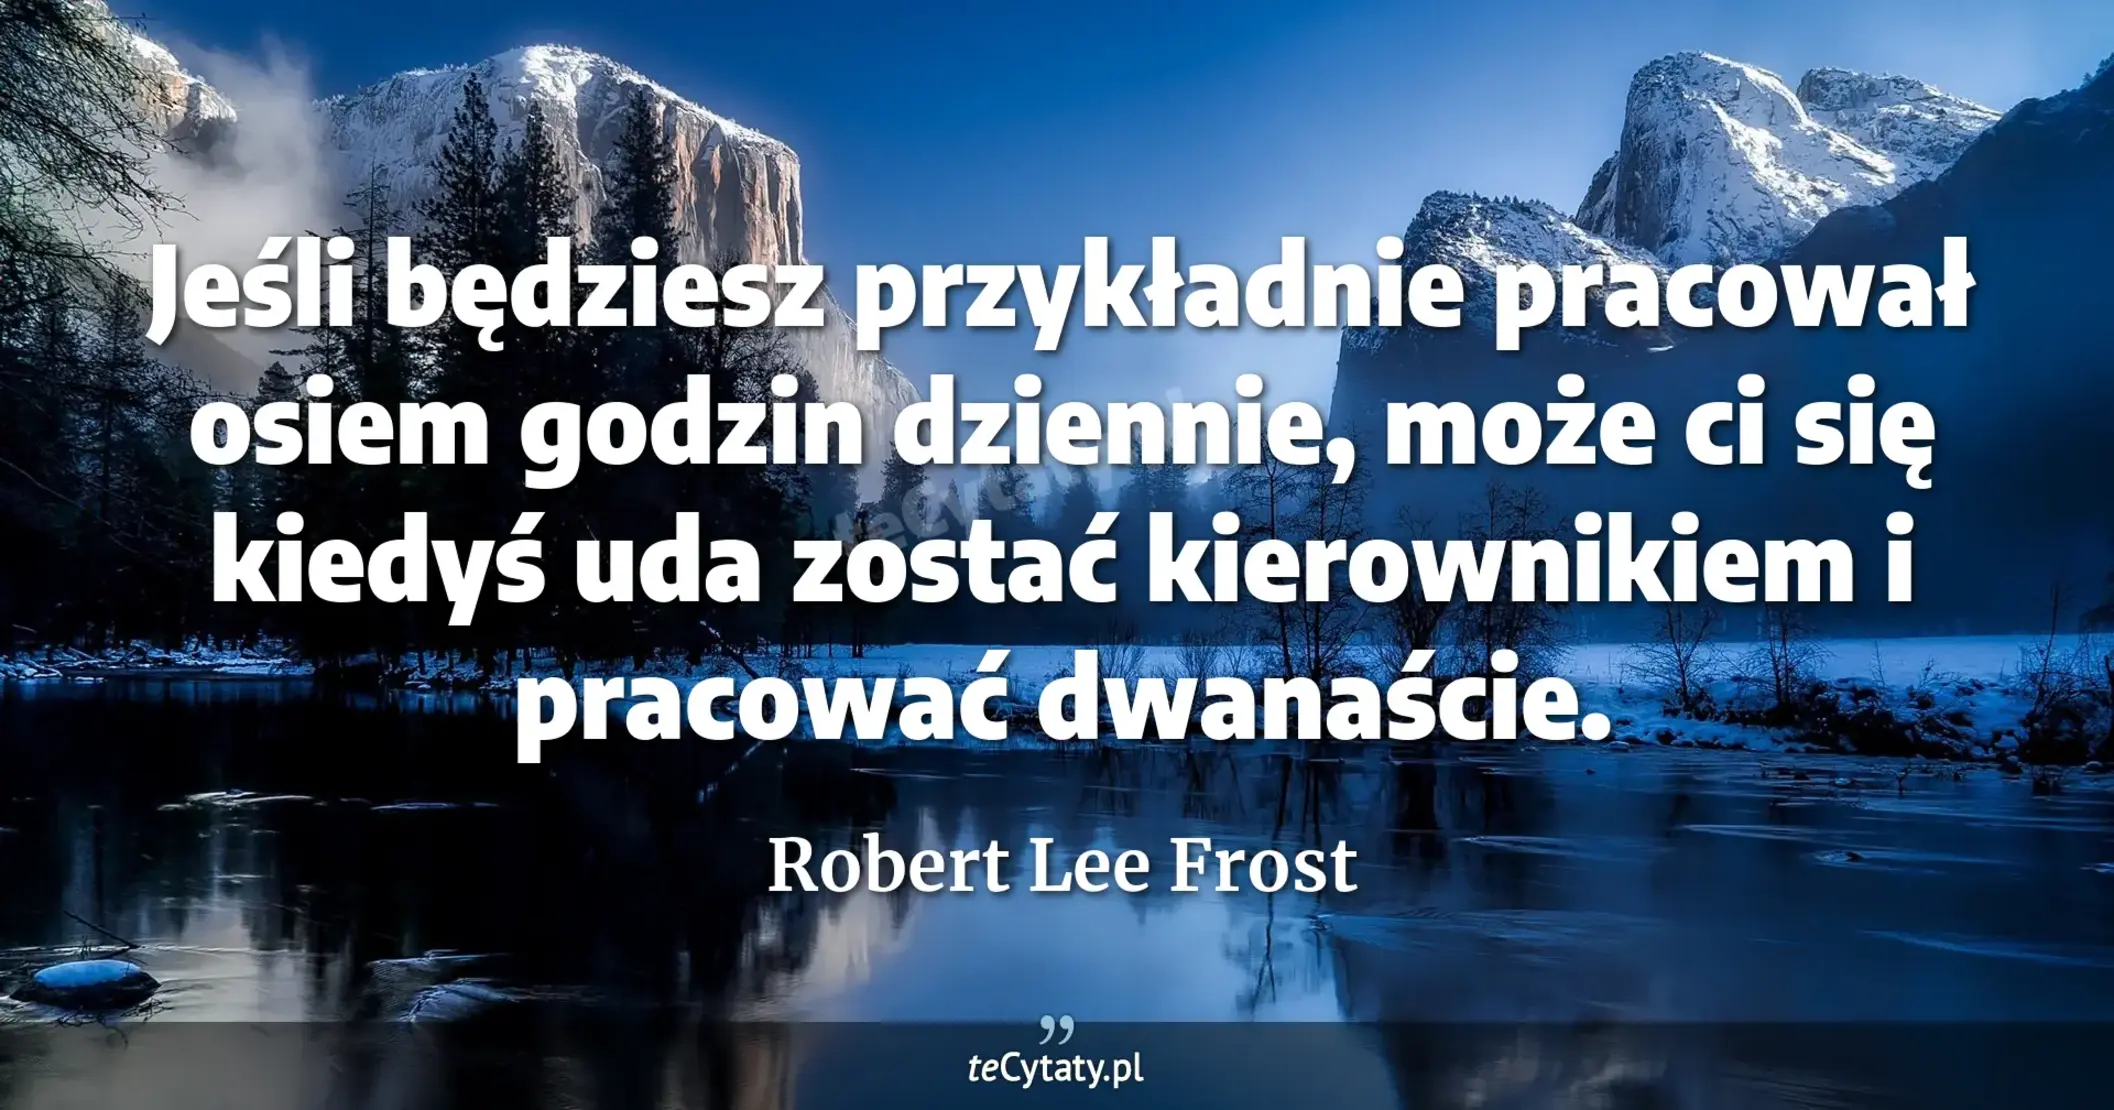 Jeśli będziesz przykładnie pracował osiem godzin dziennie, może ci się kiedyś uda zostać kierownikiem i pracować dwanaście. - Robert Lee Frost